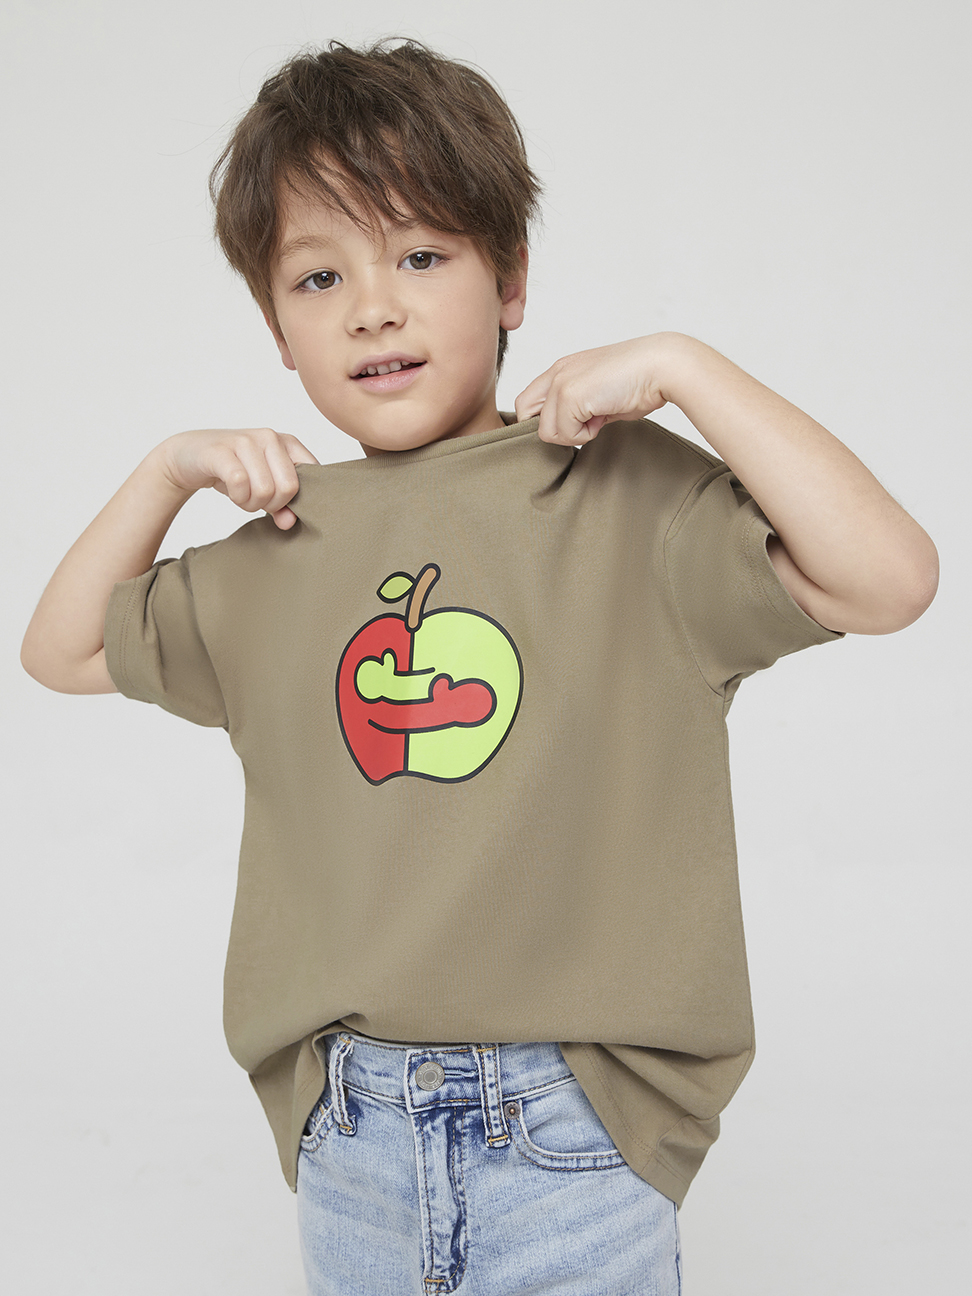 兒童裝|Gap x Ken Lo藝術家聯名 印花短袖T恤-深卡其